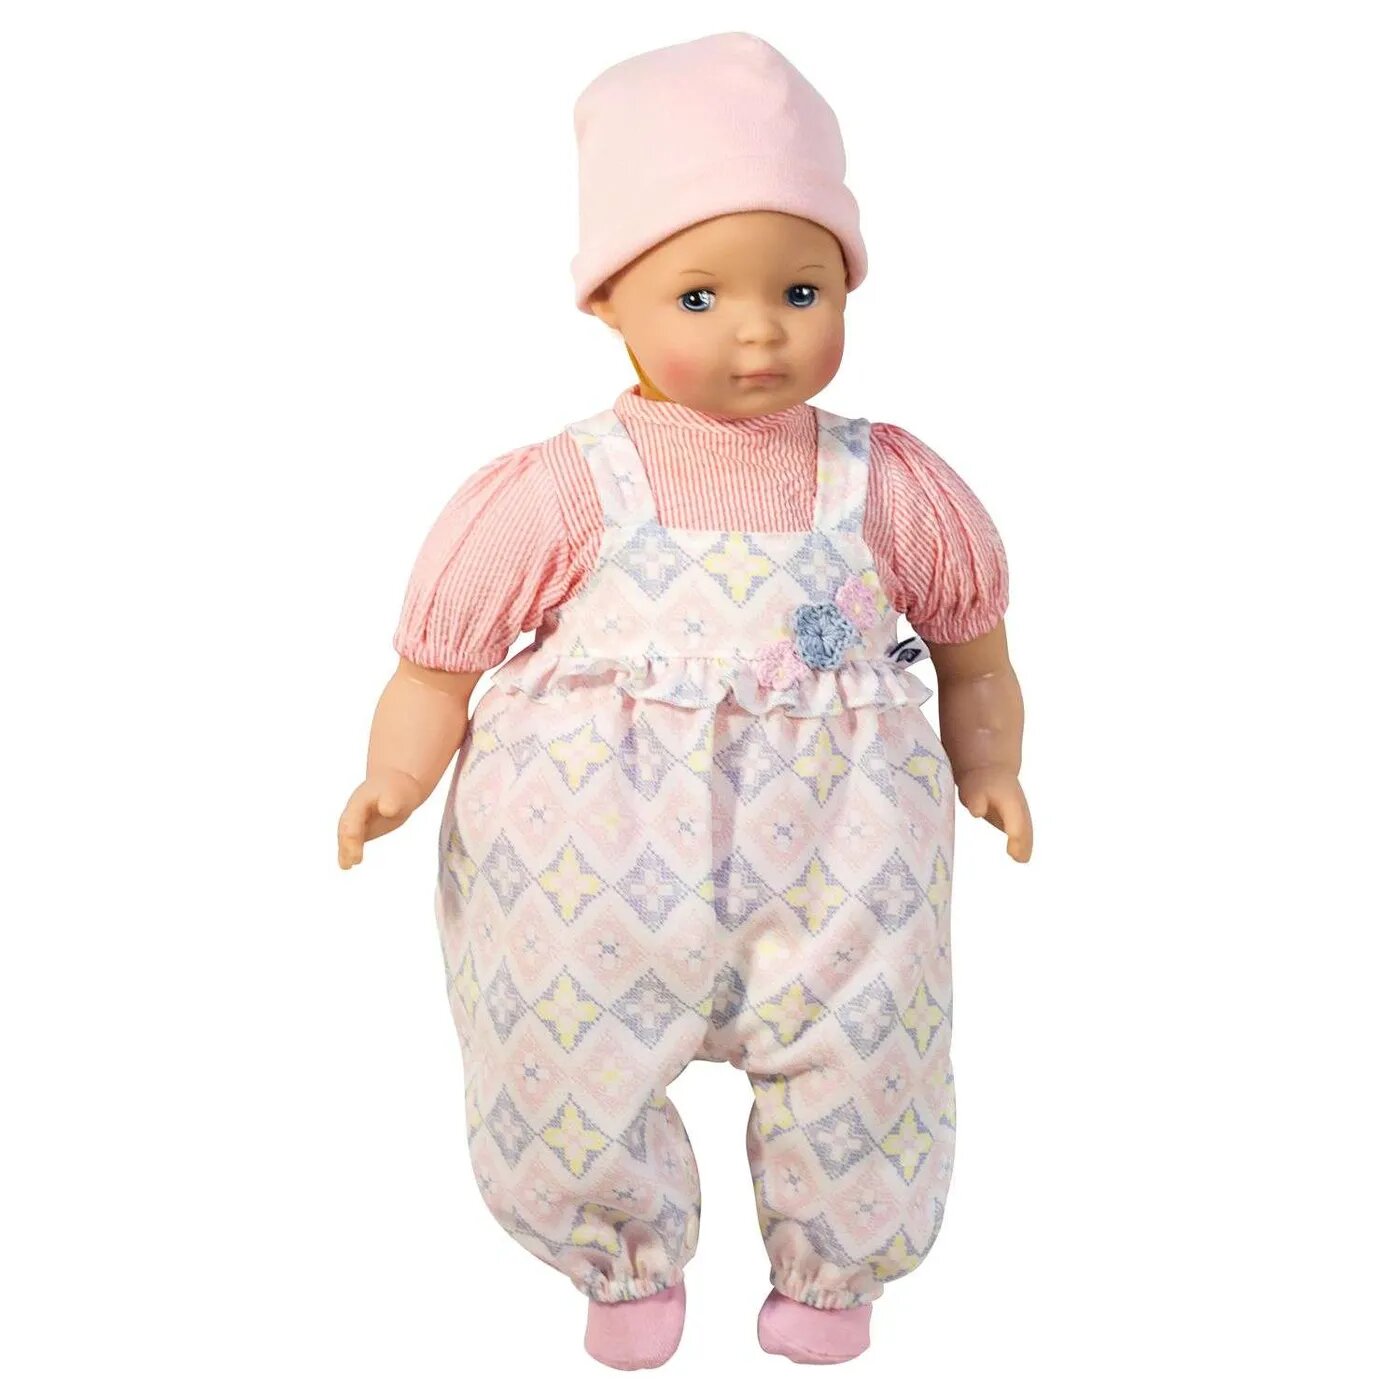 Кукла Schildkrot голубоглазая девочка, 37 см, 6837722